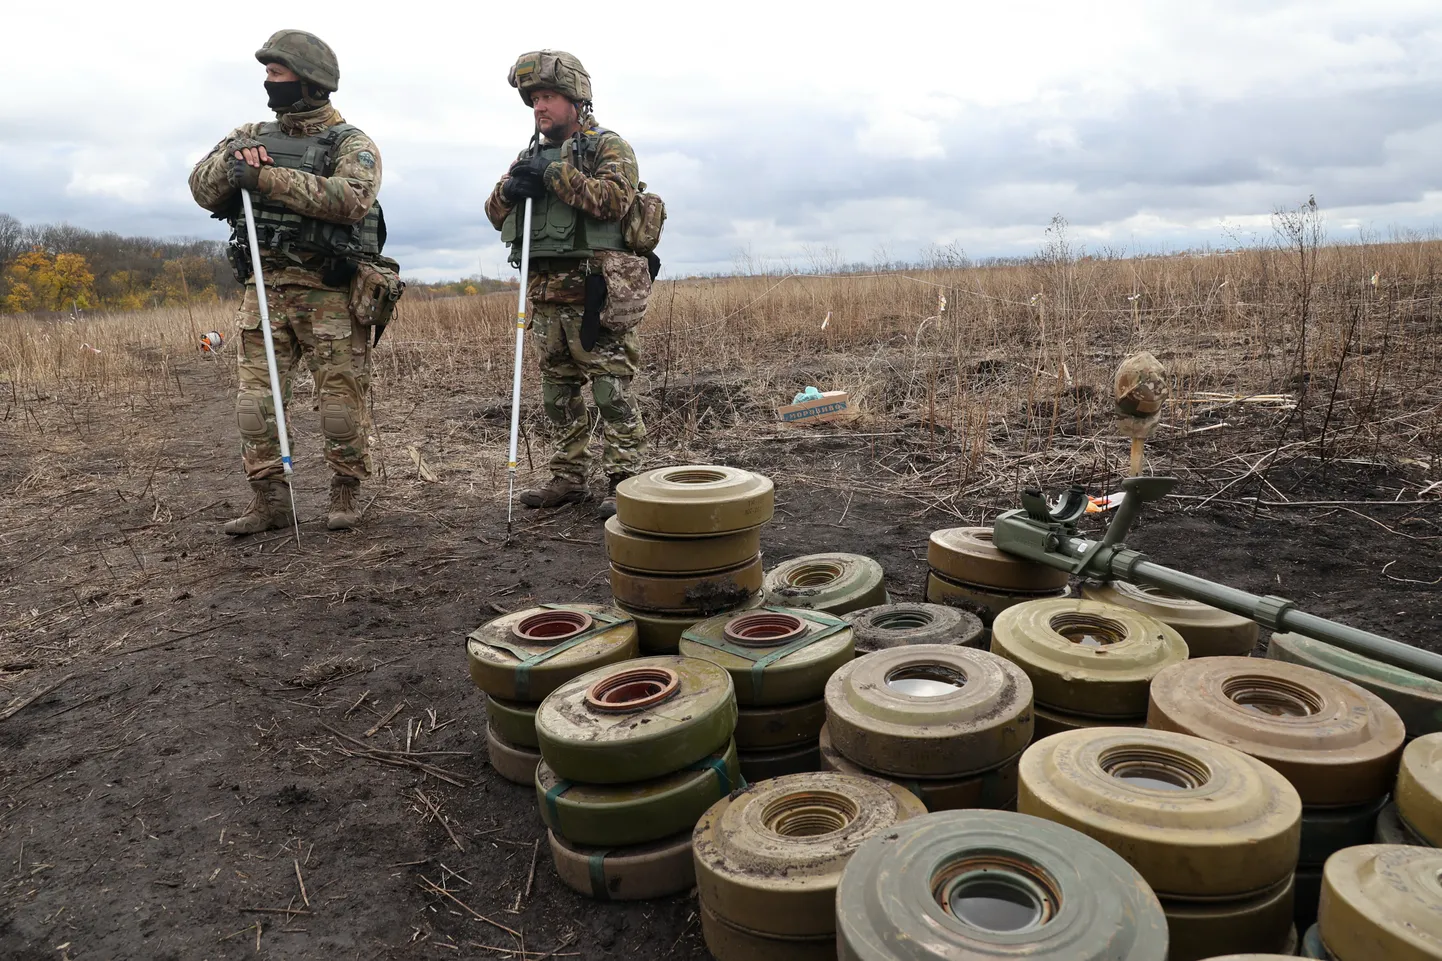 Möödunud sügisel korjati Ukrainas Harkivi oblastis kokku venelaste eelmisest suurest rünnakust maha jäetud maamiine. See on suur käsitöö ja võib lõppeda ka demineerija surmaga. Nüüd on leitud miinide asukoha ennustamiseks uus abiline - tehisintellekt, mida saaks kasutada ka Ukrainas.